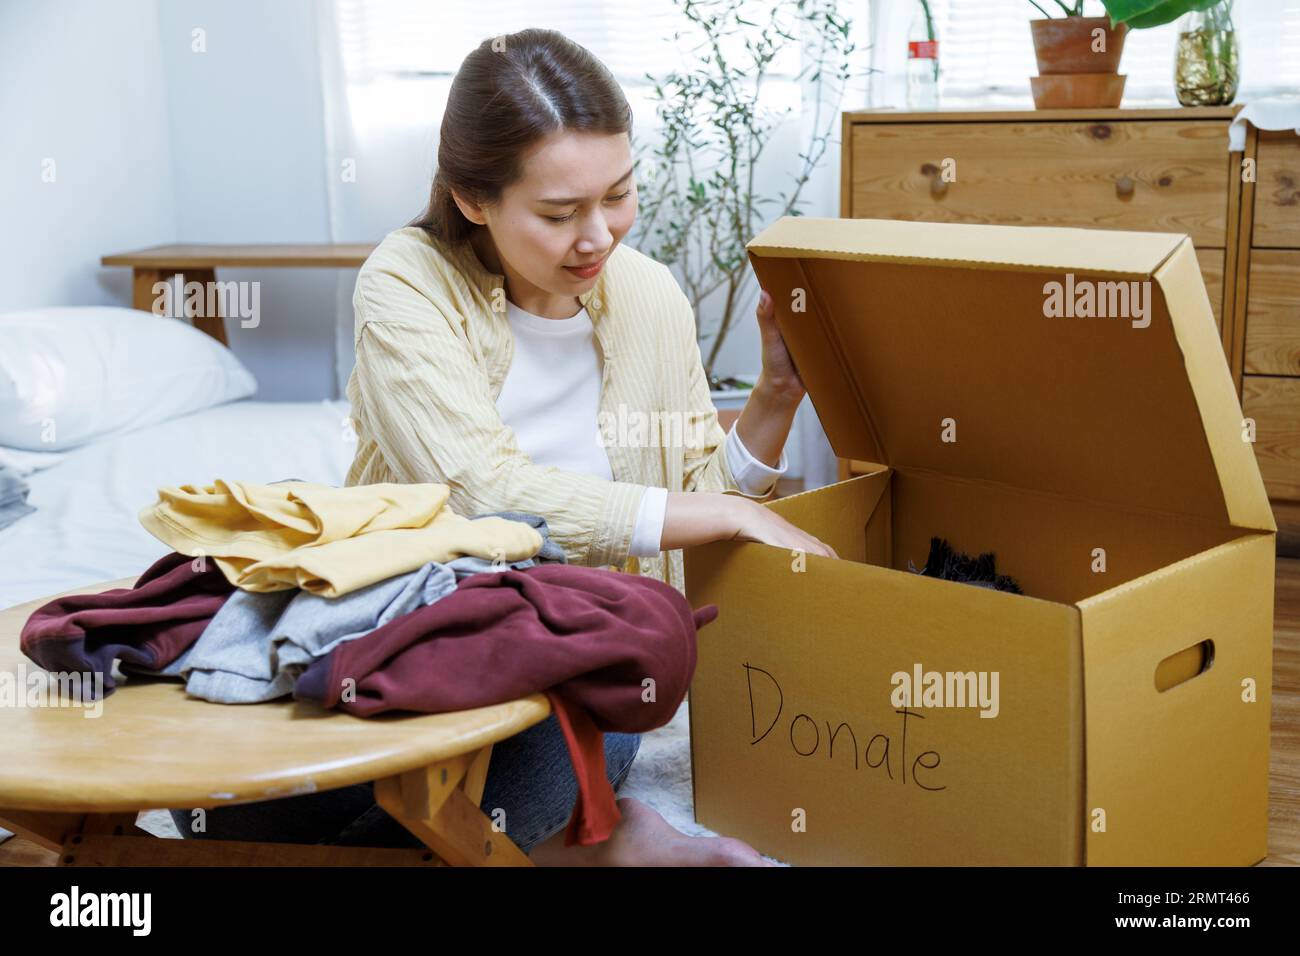 femme asiatique bénévole mettant des vêtements inutilisés dans des boîtes en carton pour don et charité. Réutilisation, recyclage, renouvelable et concept de durabilité. Banque D'Images